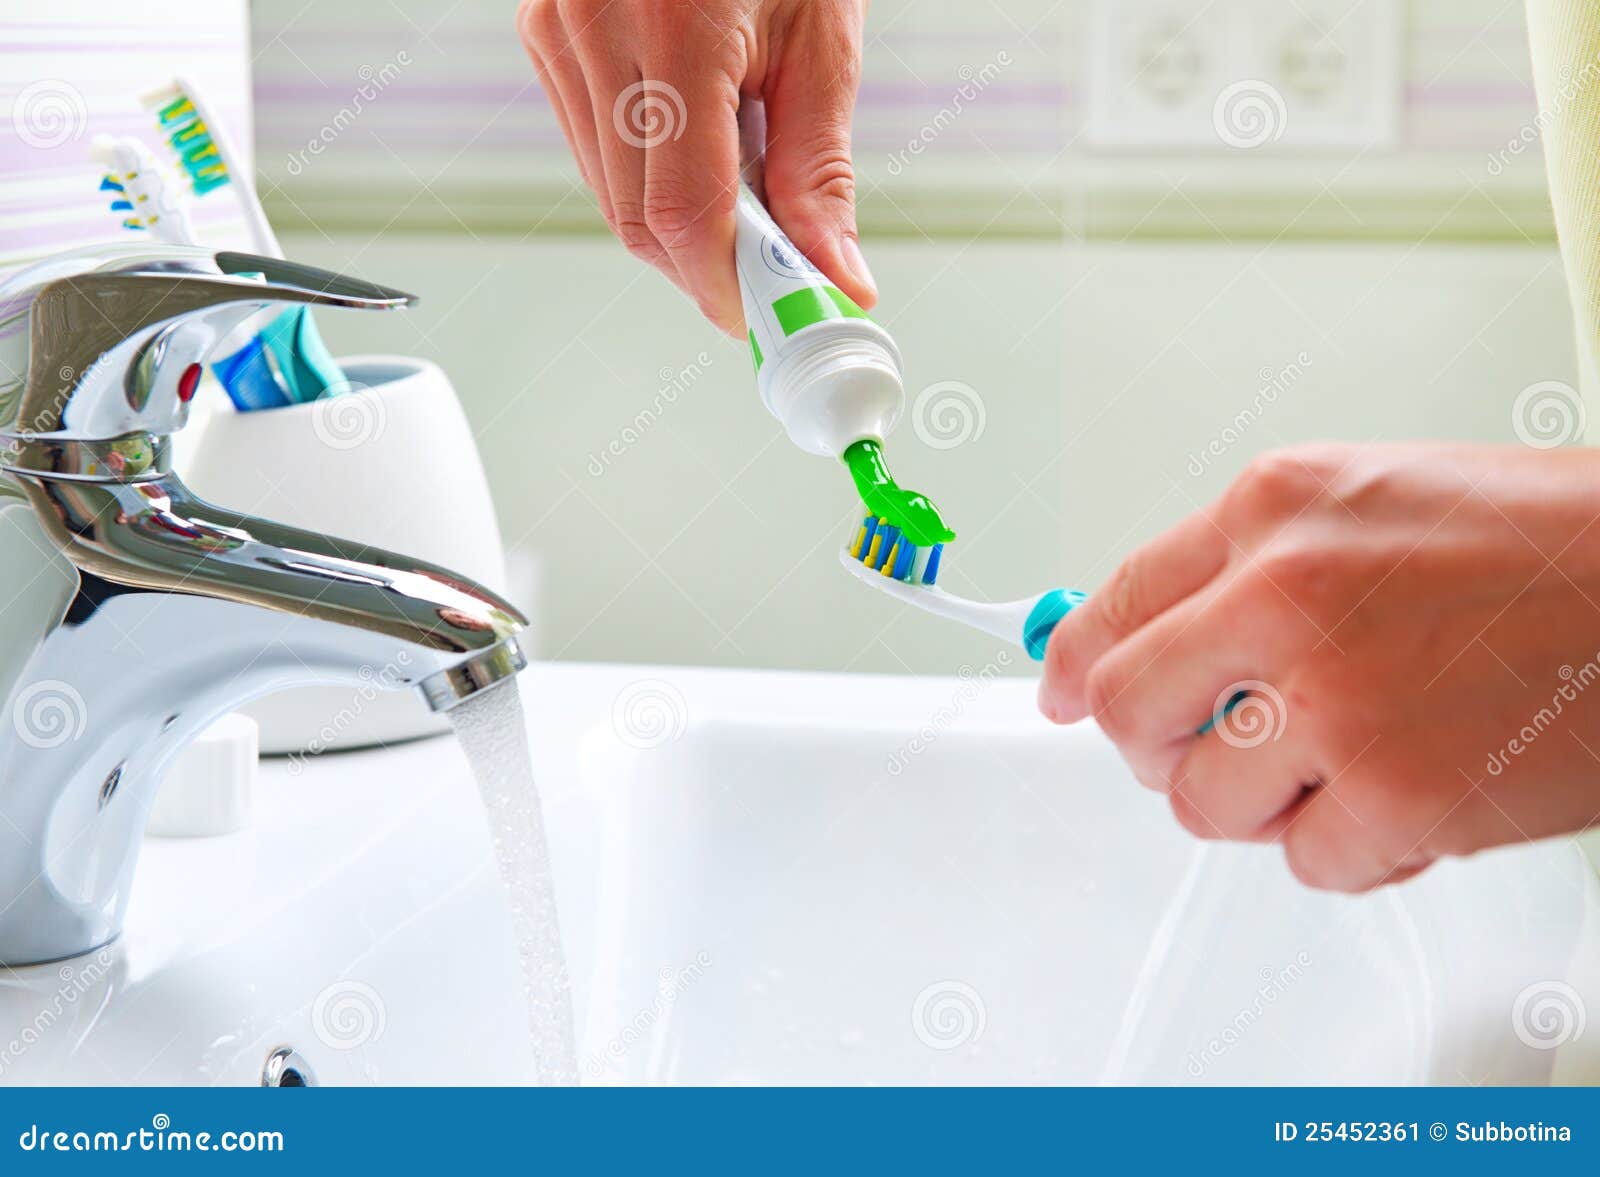 brushing teeth. bathroom